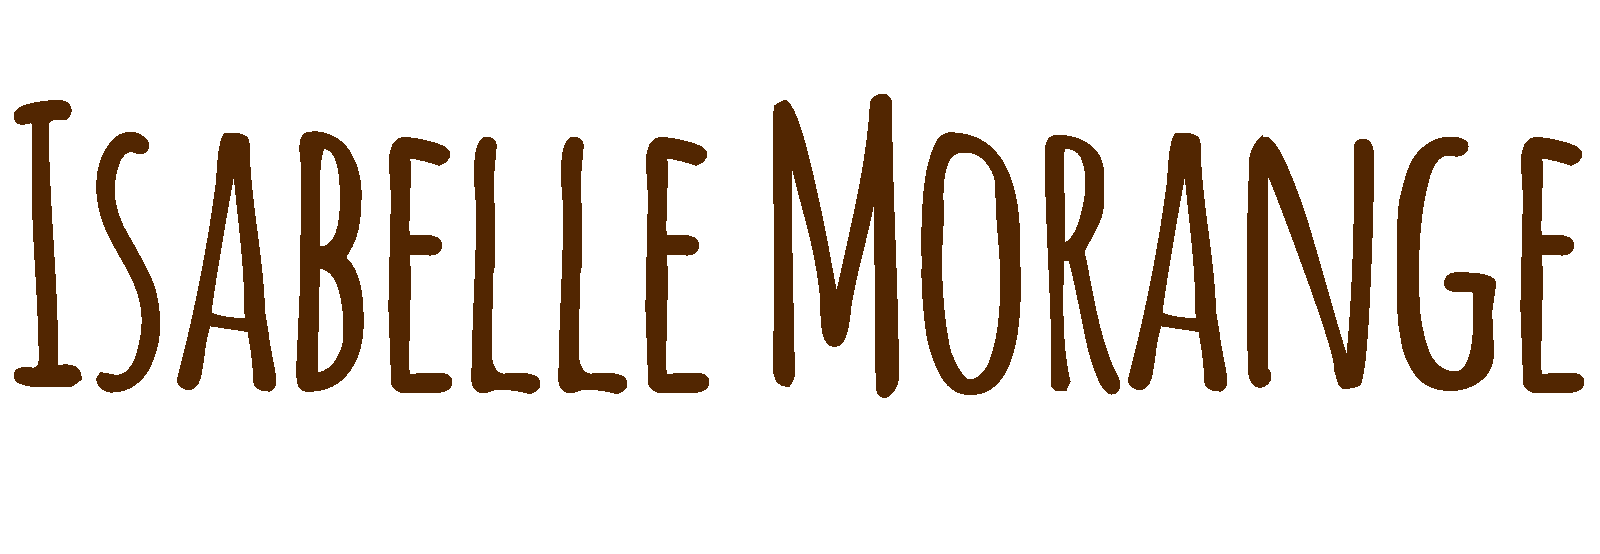 Isabelle Morange